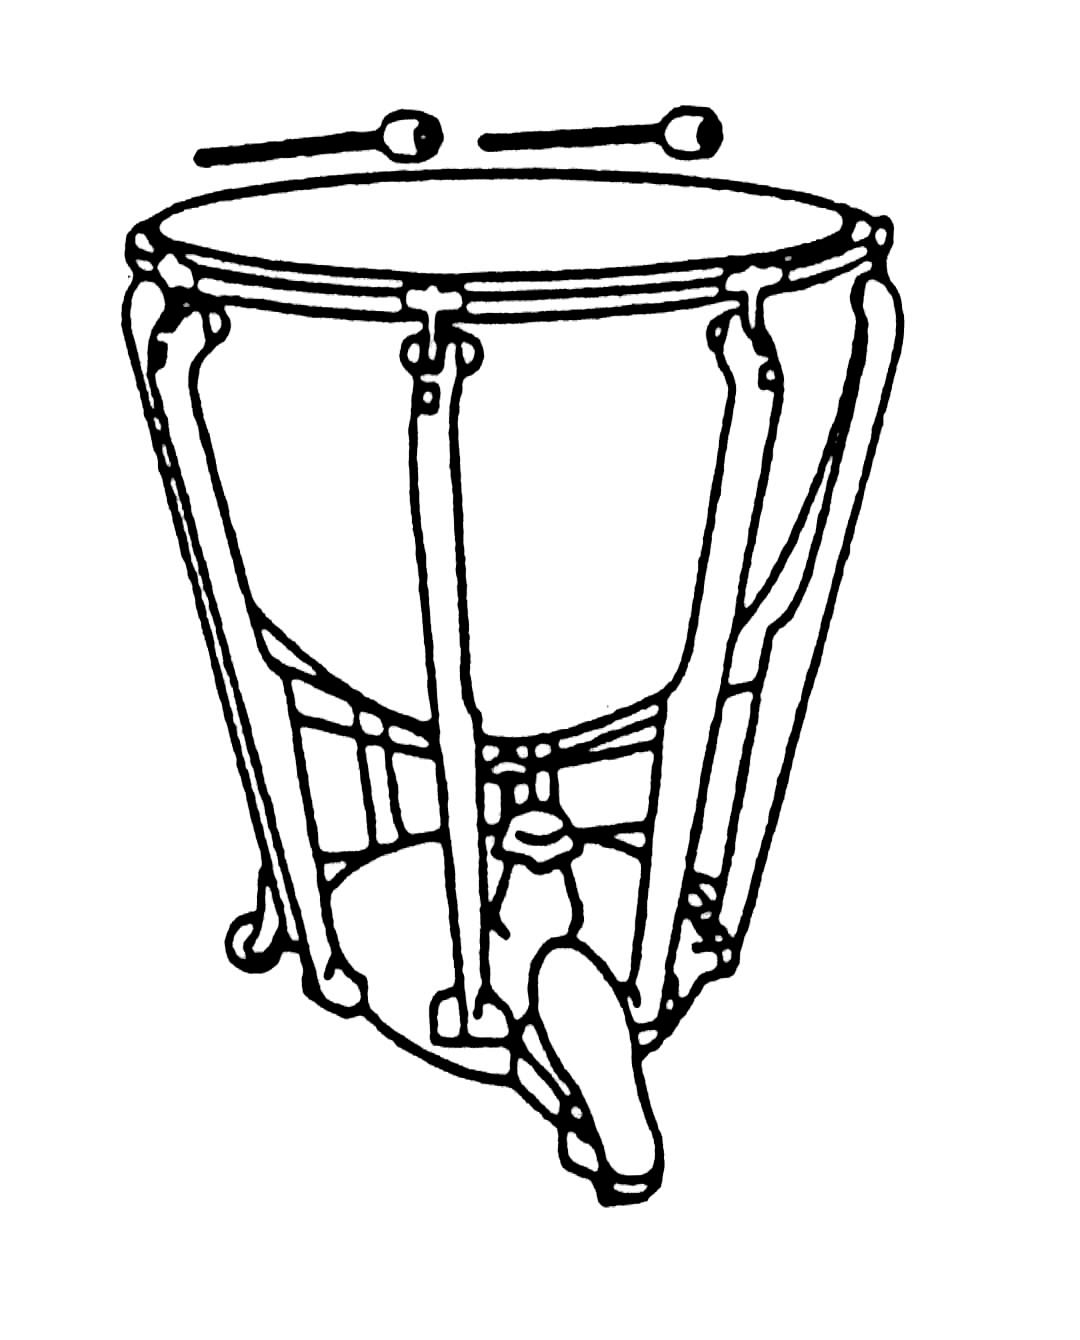 Instruments clipart cymbal. Morris bobbi th grade